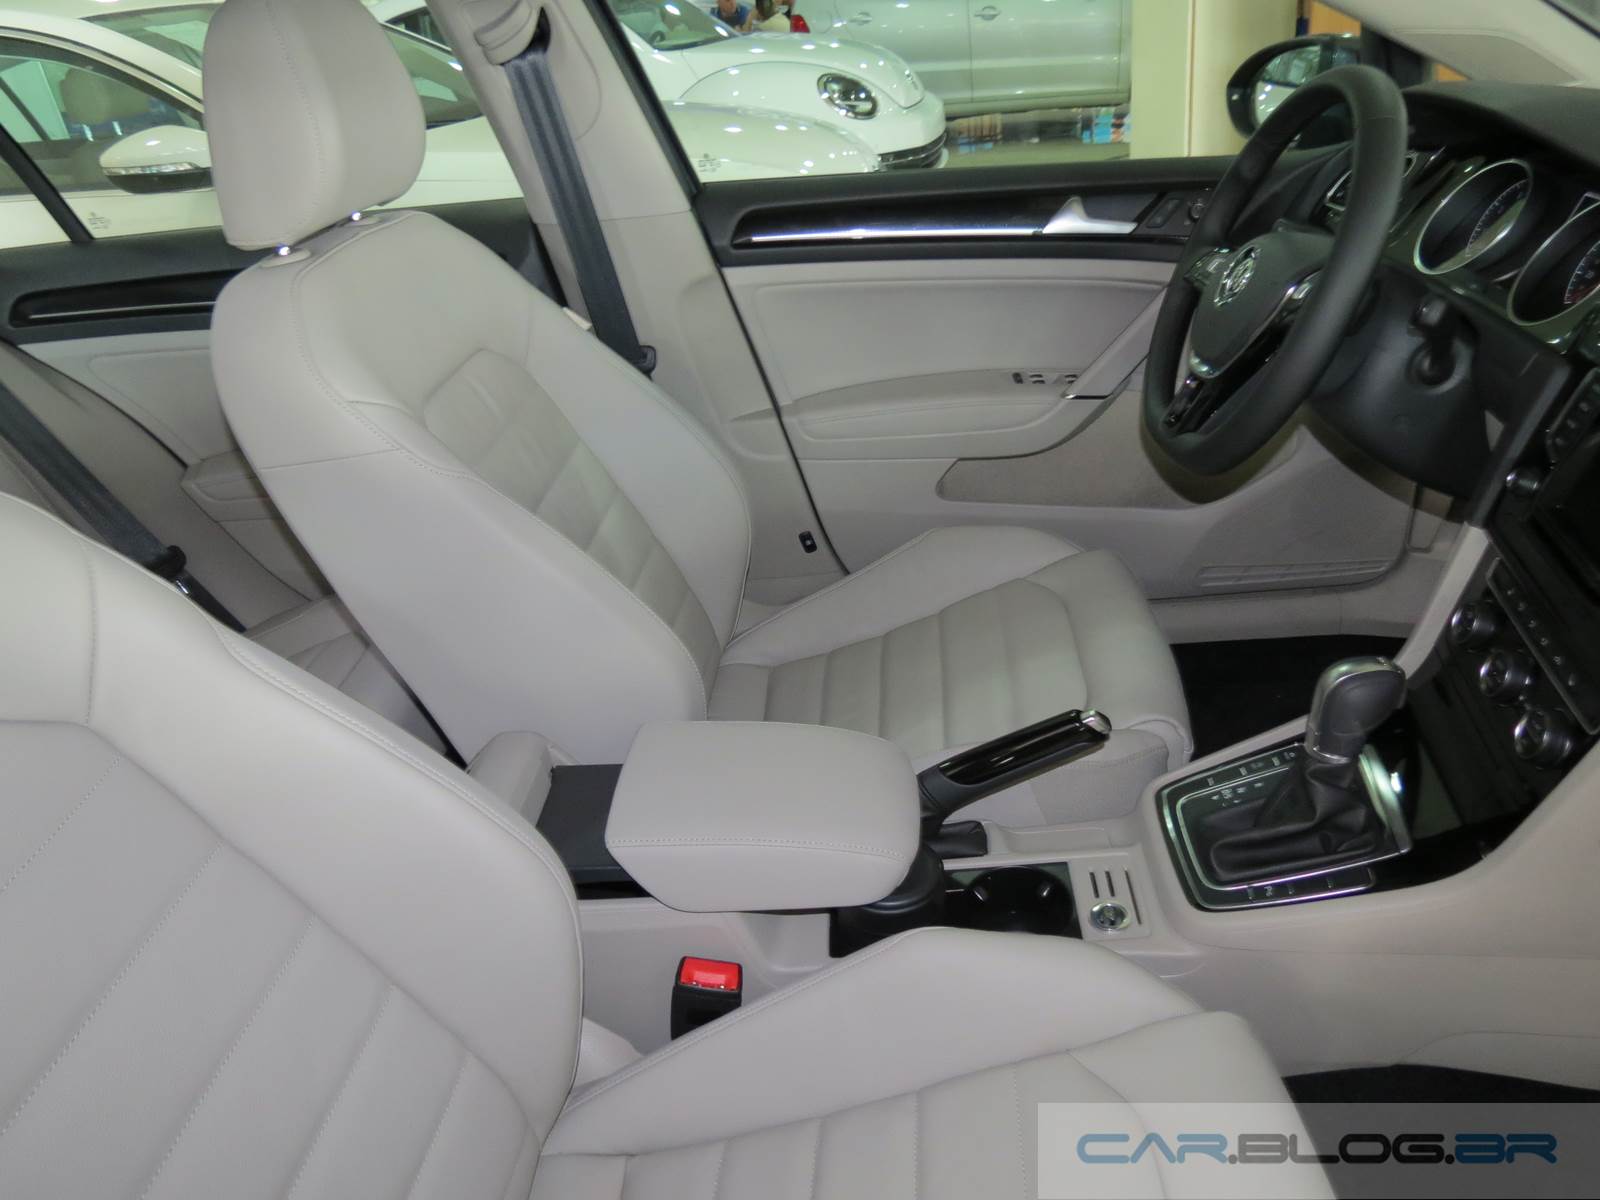 VW Golf 2016 - interior - bege